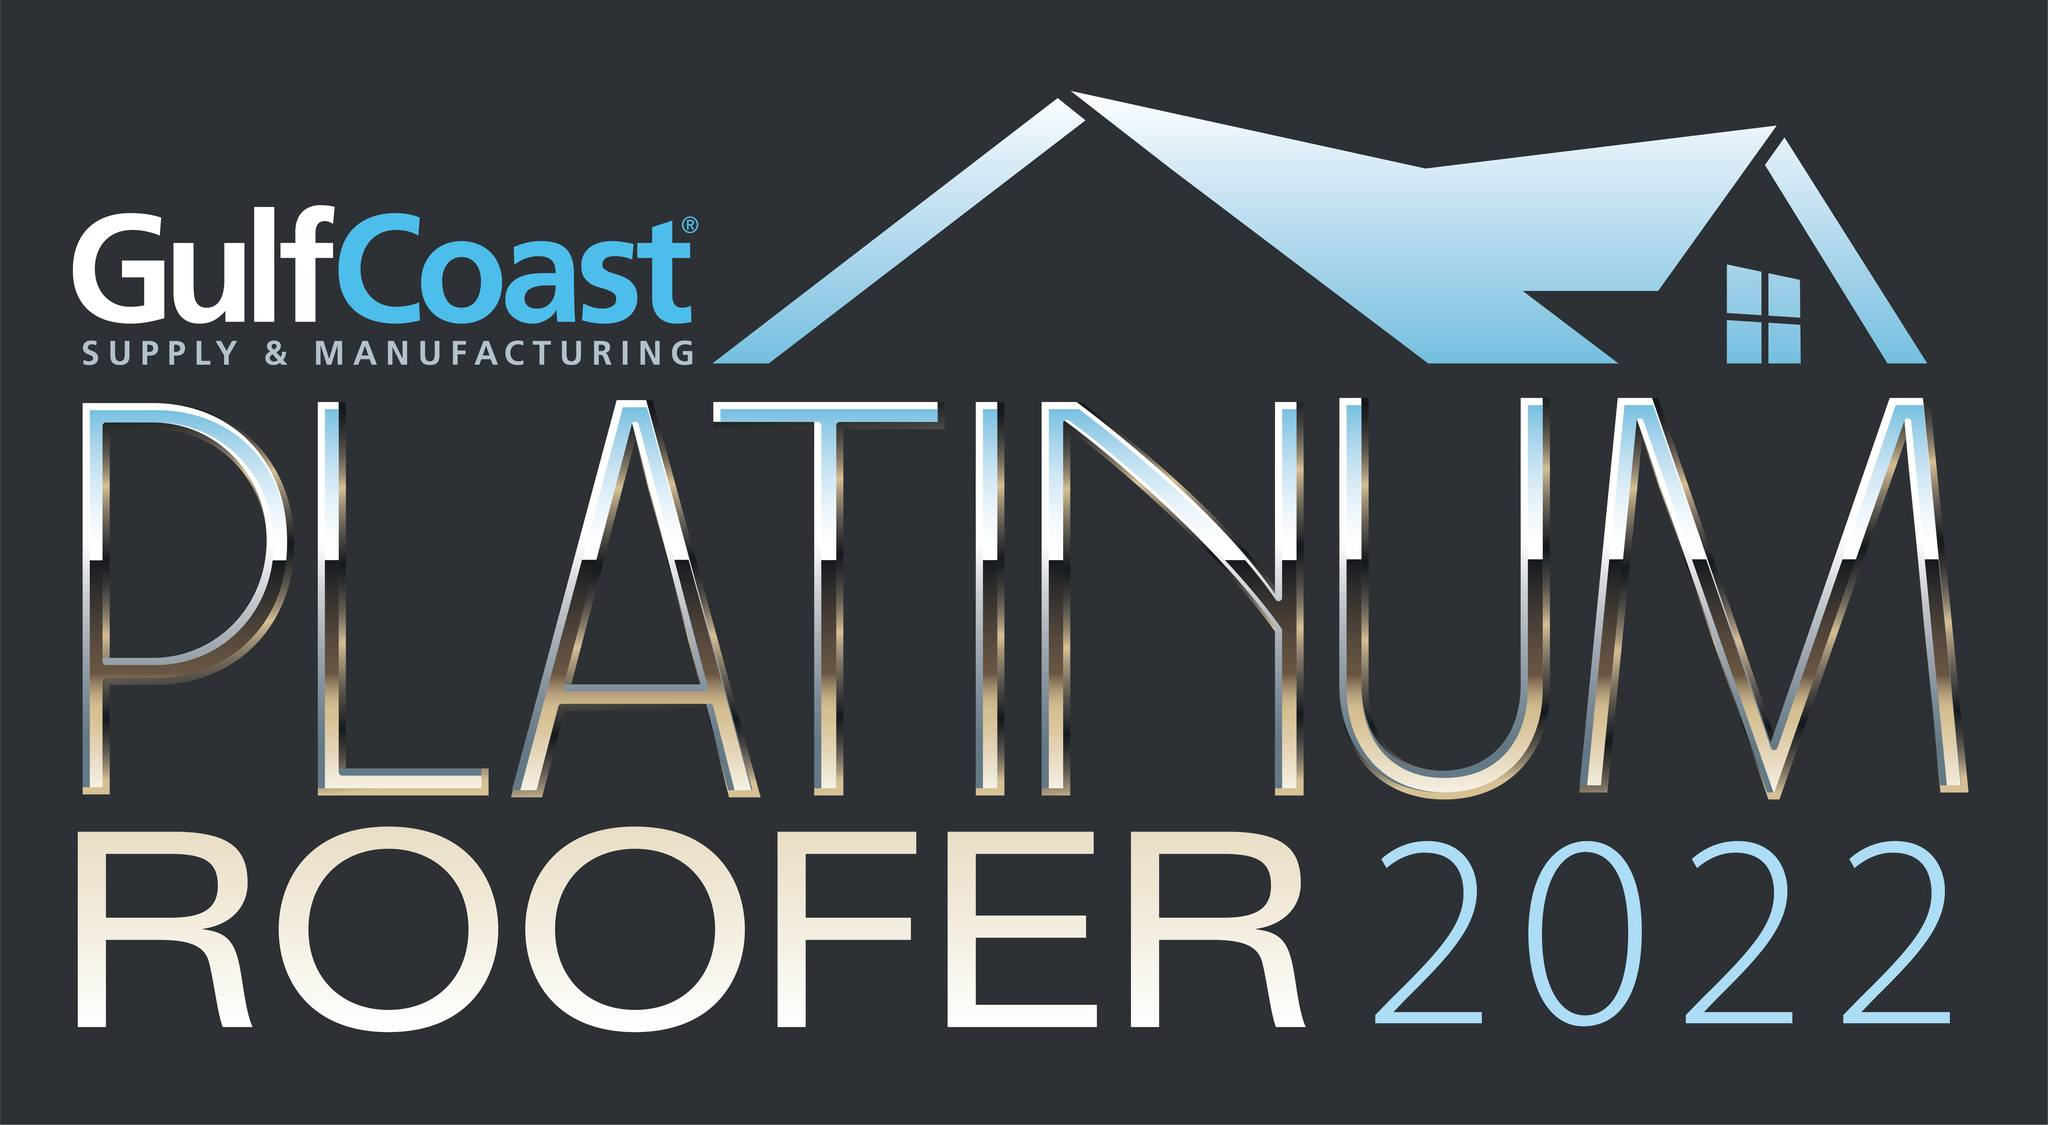 GulfCoast Logo - Platinum Roofer 2022